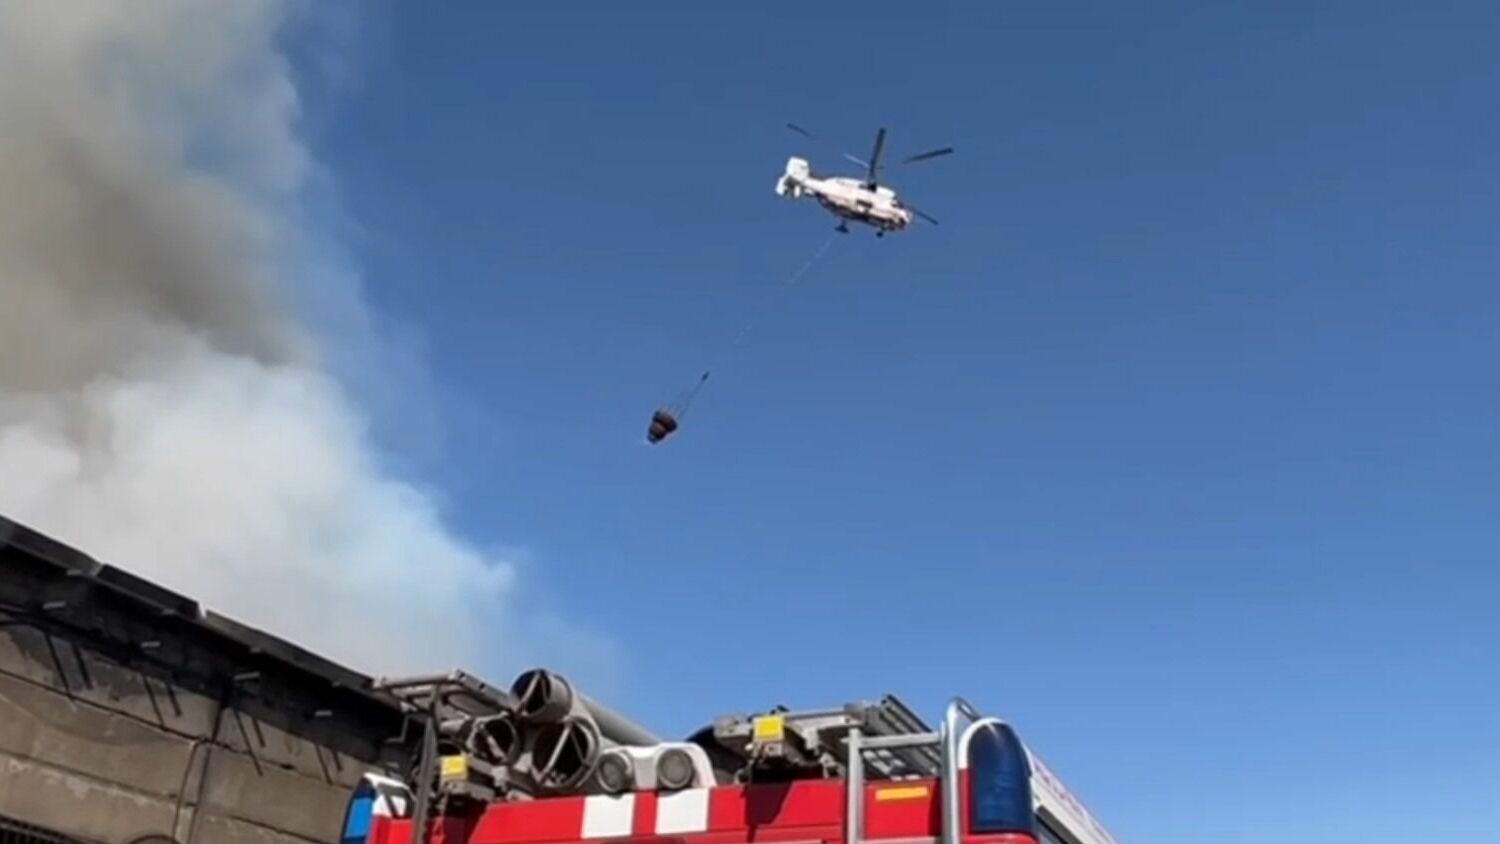 К тушению пожара на юго-востоке Москвы привлекли вертолет и пожарный поезд (ВИДЕО)